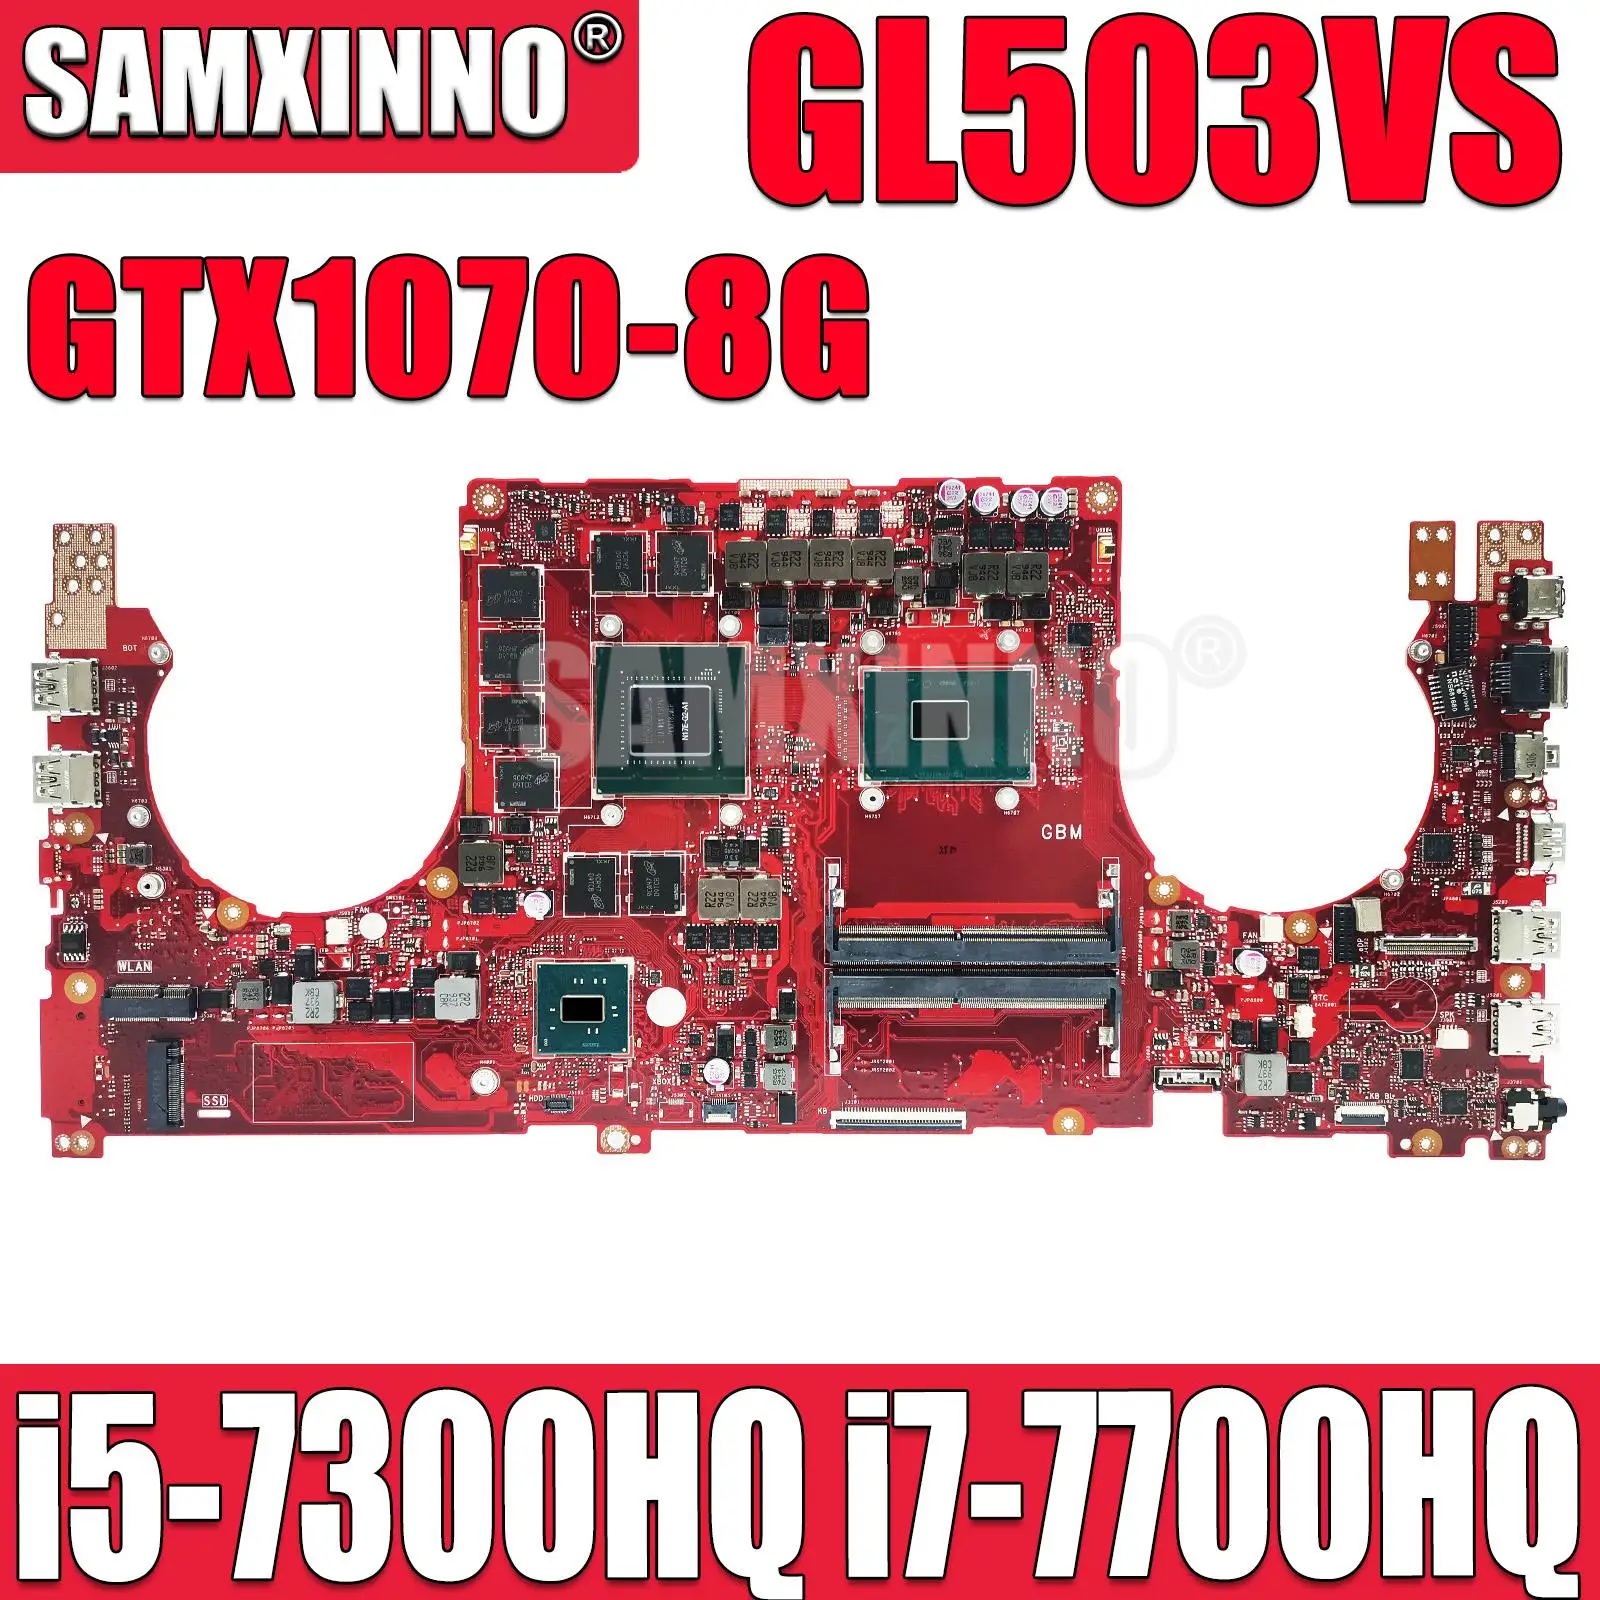 GL503VS Материнская плата для ноутбука ASUS ROG FX503 FX503V GL503 GL503V GL503VS Материнская плата с графическим процессором i5-7300HQ i7-7700HQ GTX1070-8G